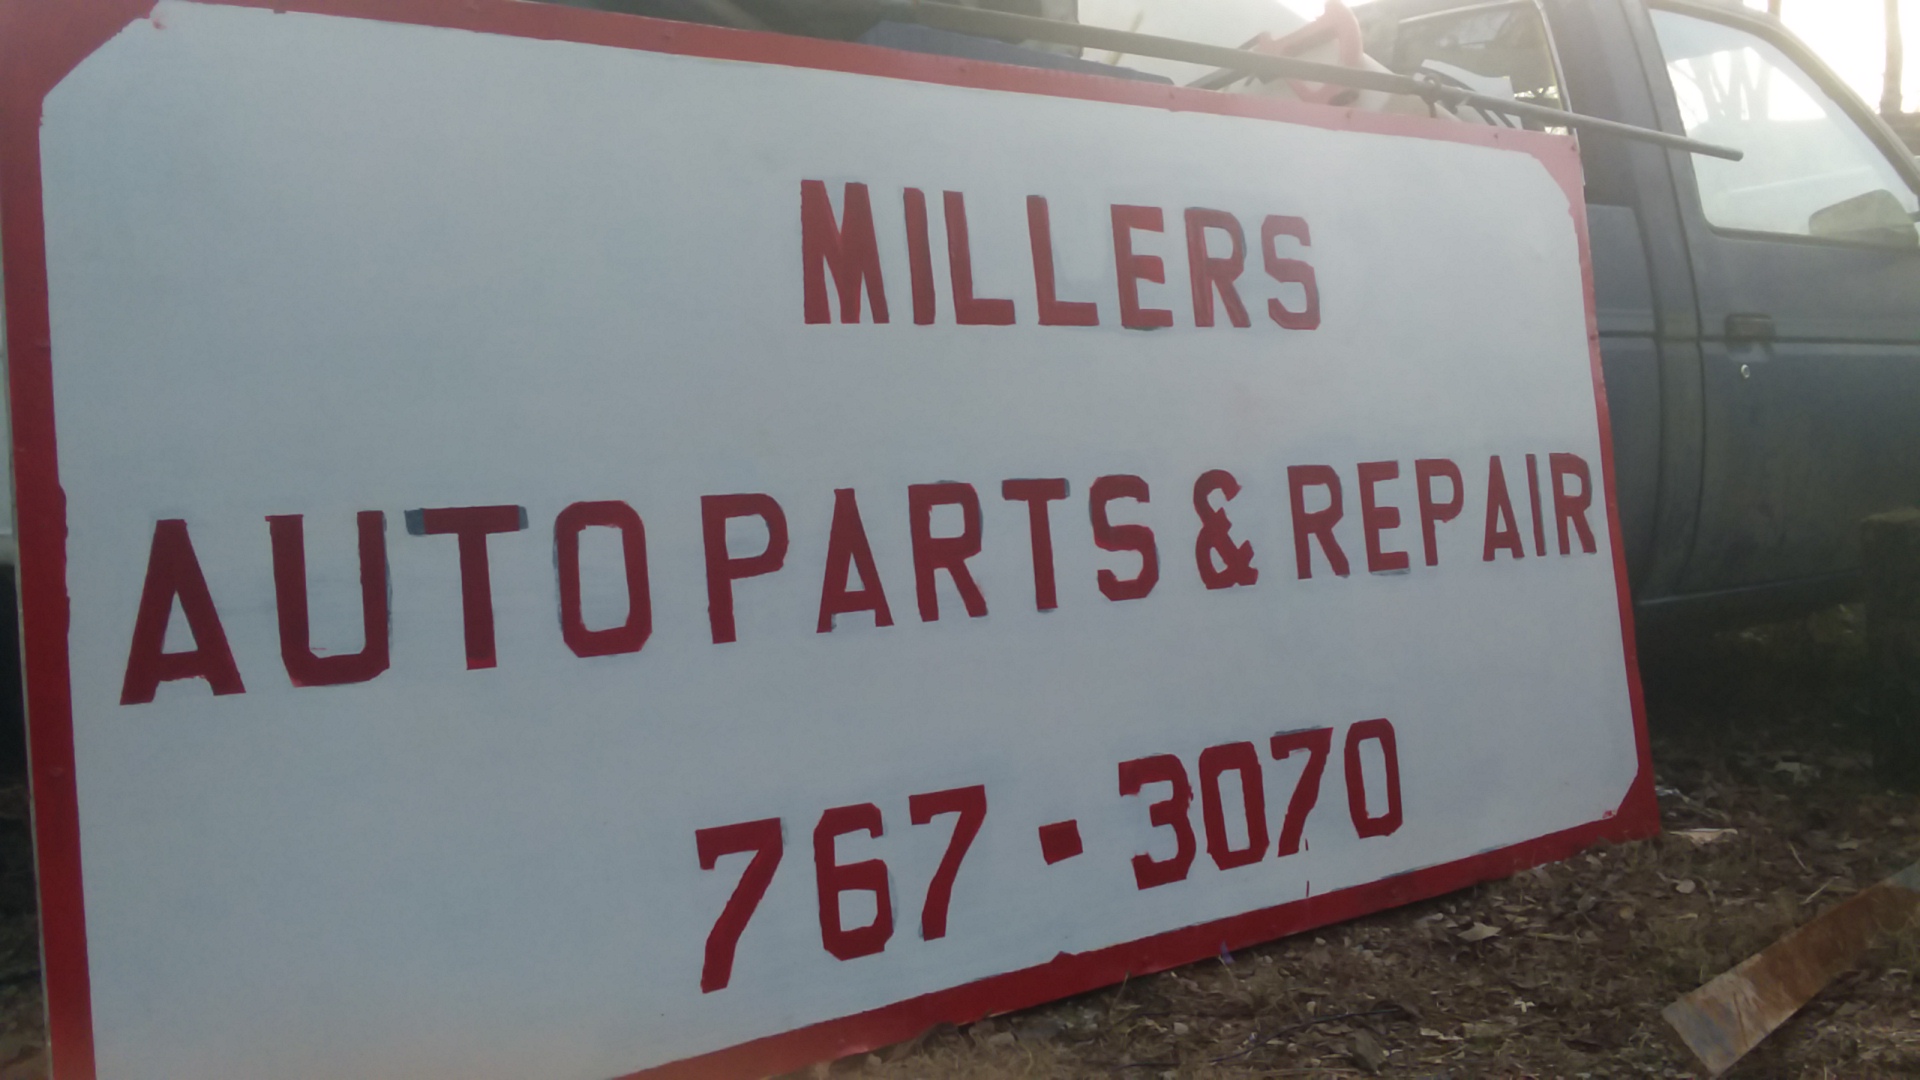 Miller's Auto Parts & Repair